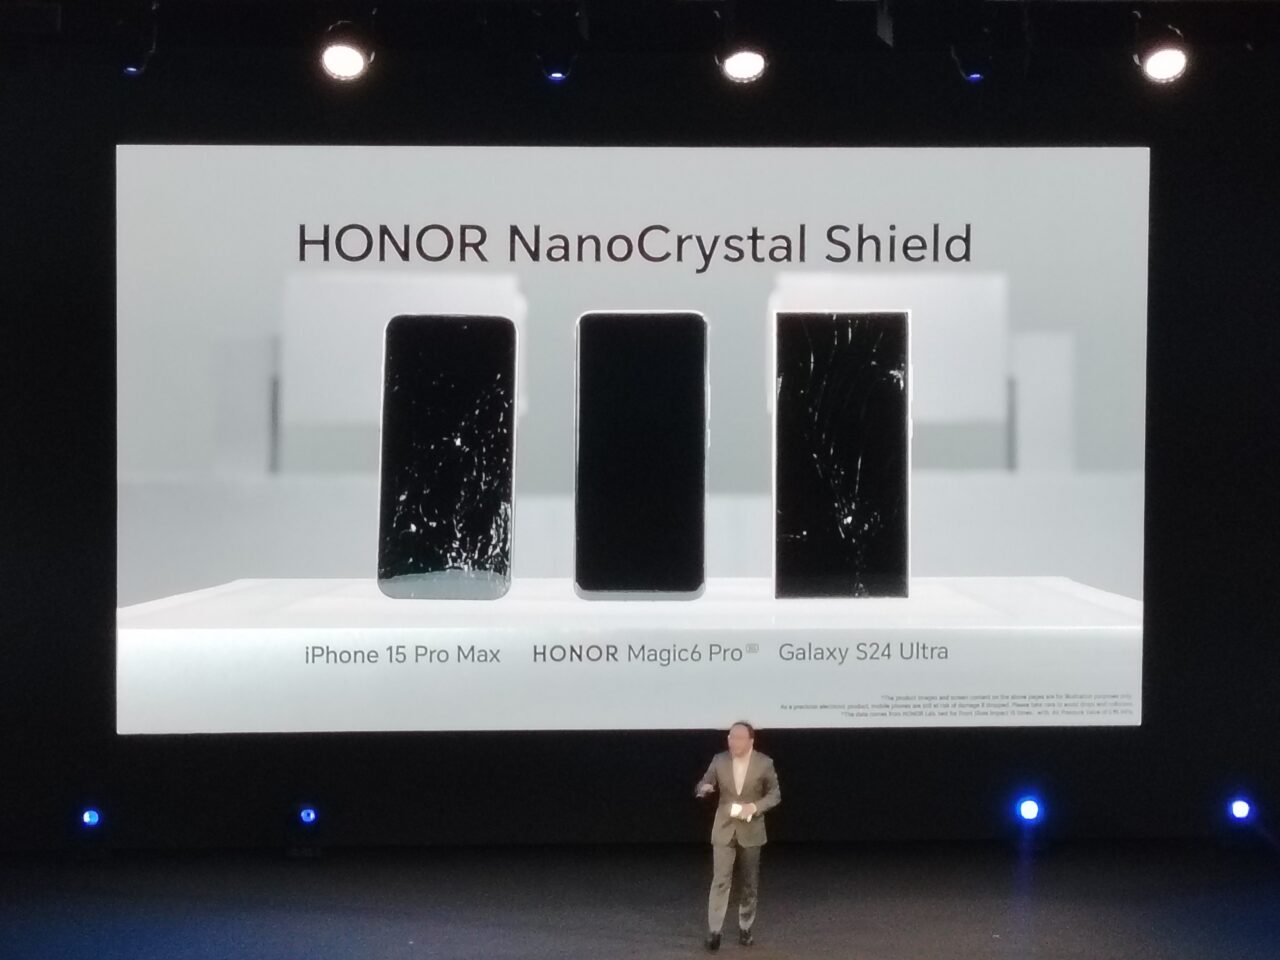 Prezentacja trzech smartfonów na scenie z uszkodzonymi ekranami, podpisane jako "iPhone 15 Pro Max", "HONOR Magic6 Pro" i "Galaxy S24 Ultra", nad nimi napis "HONOR NanoCrystal Shield", osoba stoi na scenie po prawej stronie.